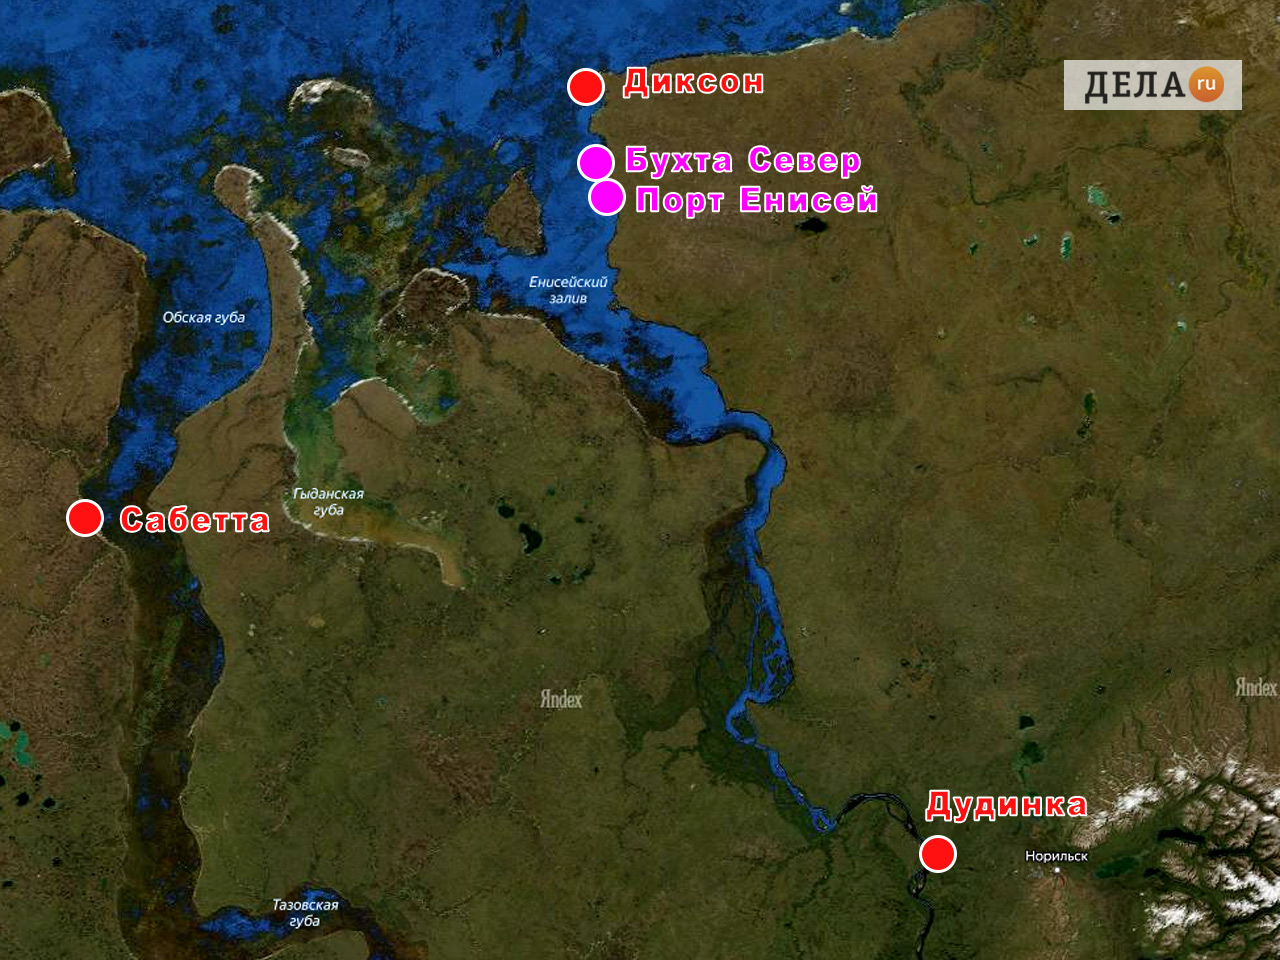 Порты Бухта Север и Порт Енисей в Енисейском заливе карта 